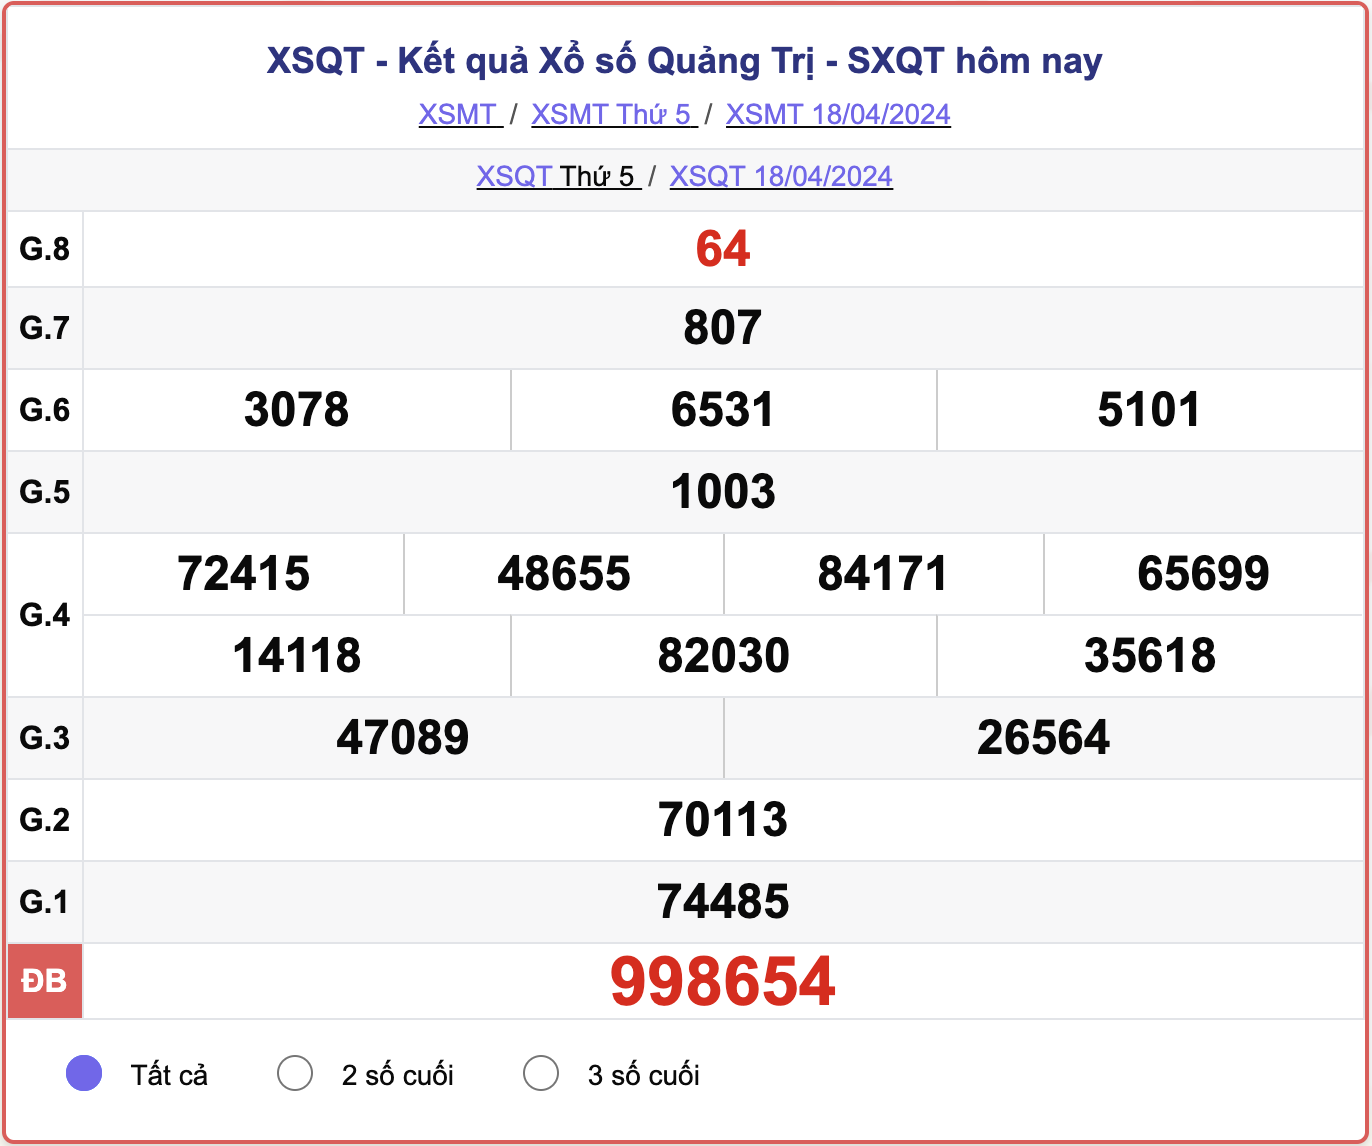 XSQT thứ 5, kết quả xổ số Quảng Trị ngày 18/4/2024.